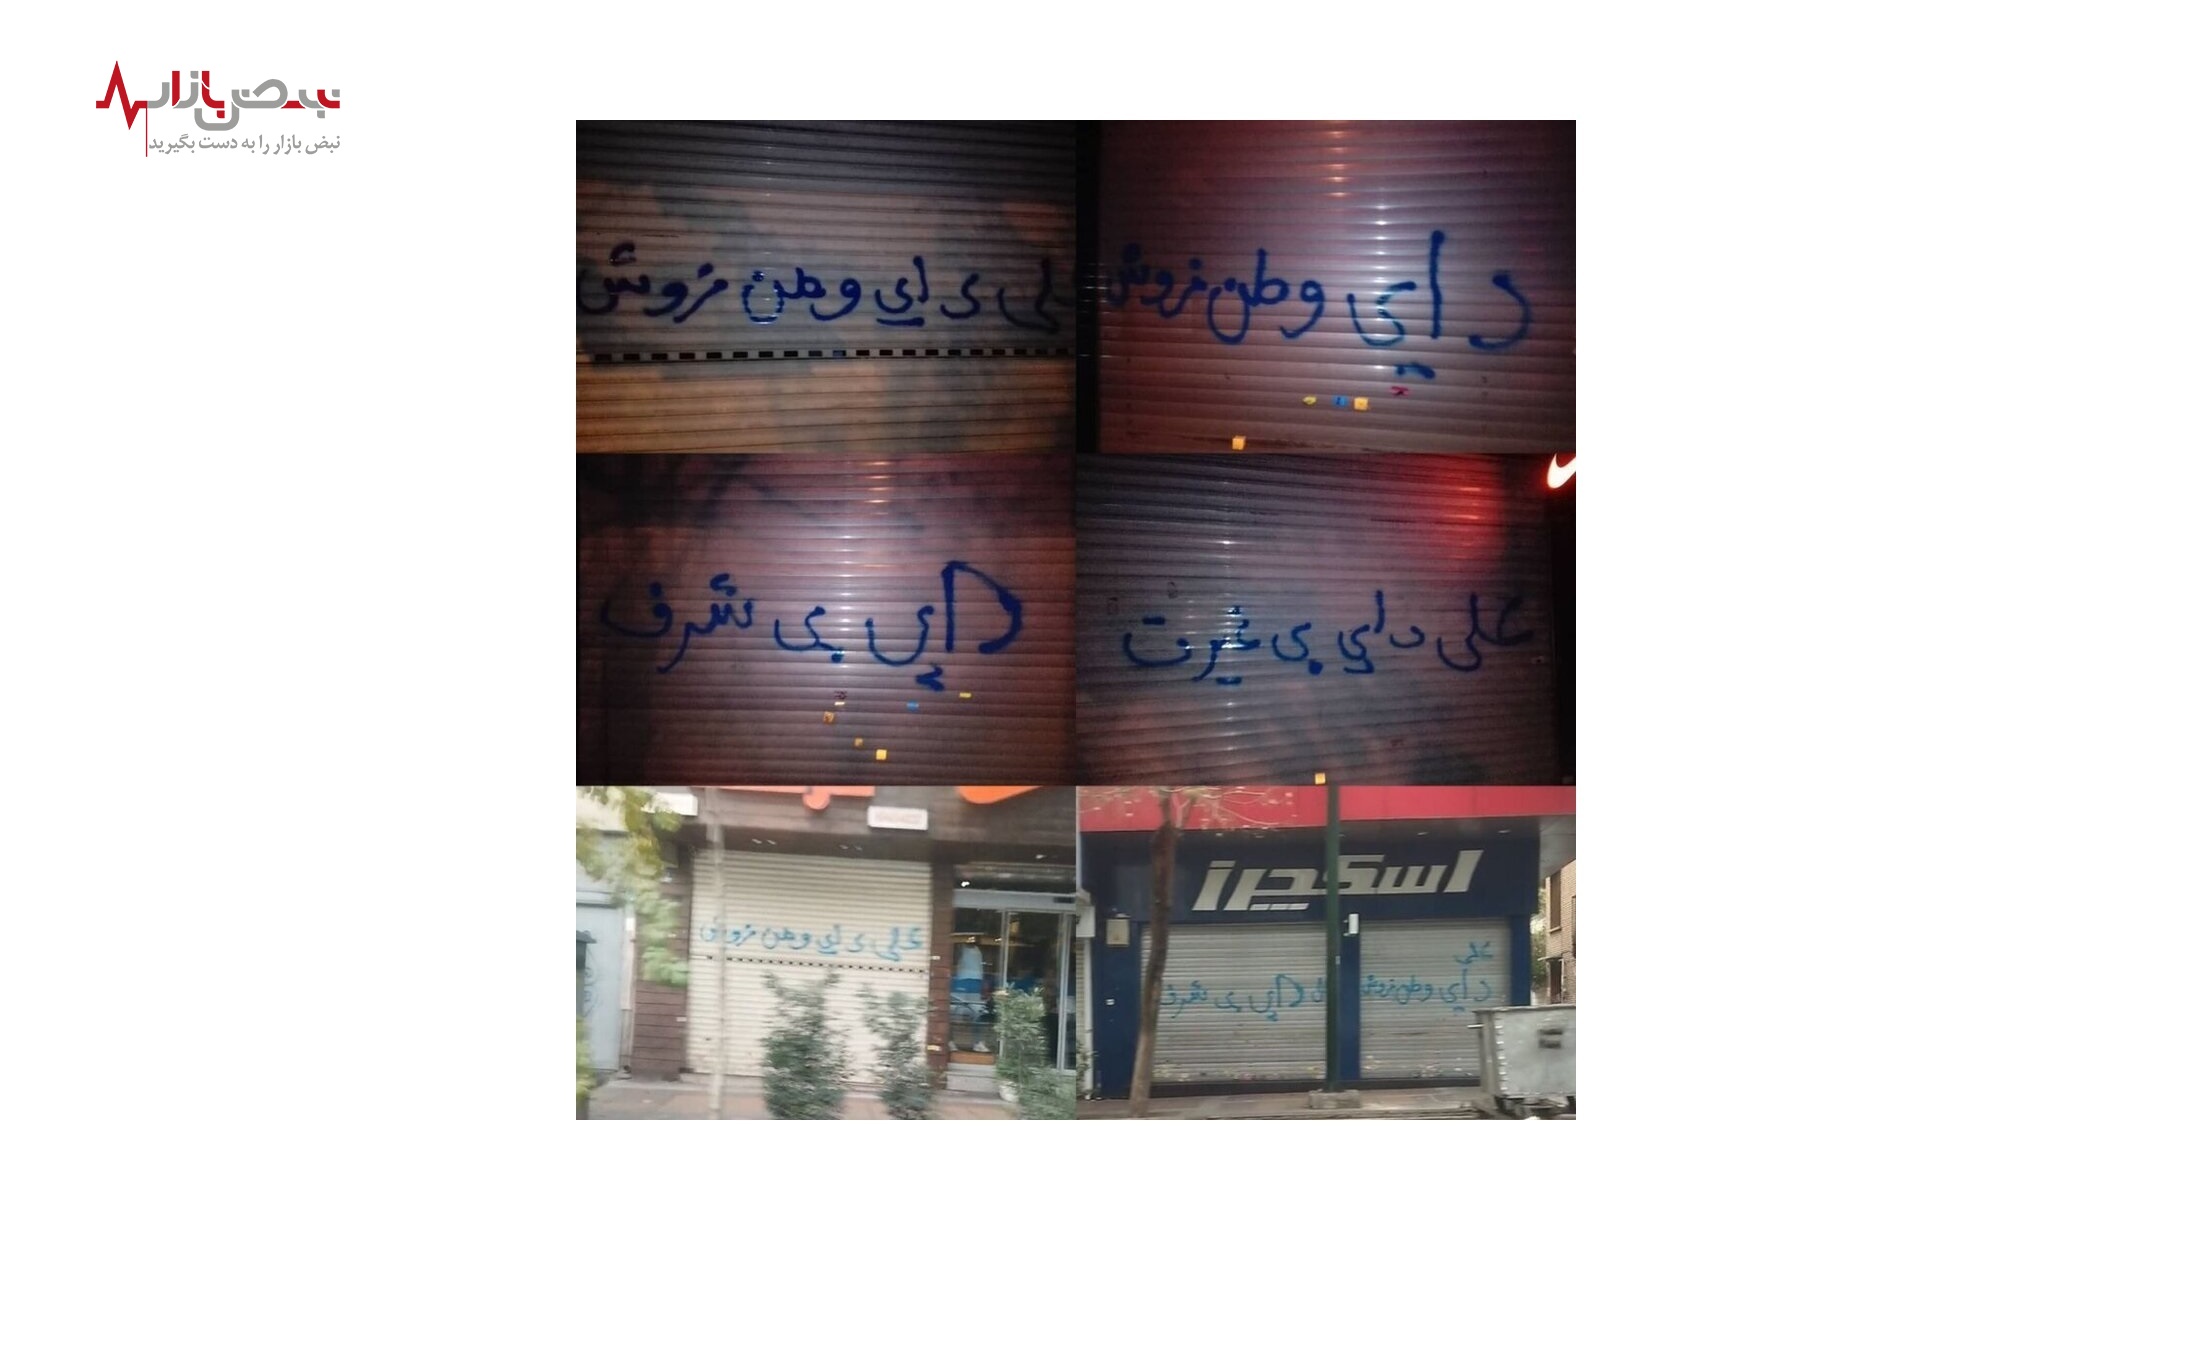 شعار ها بر روی در مغازه علی دایی